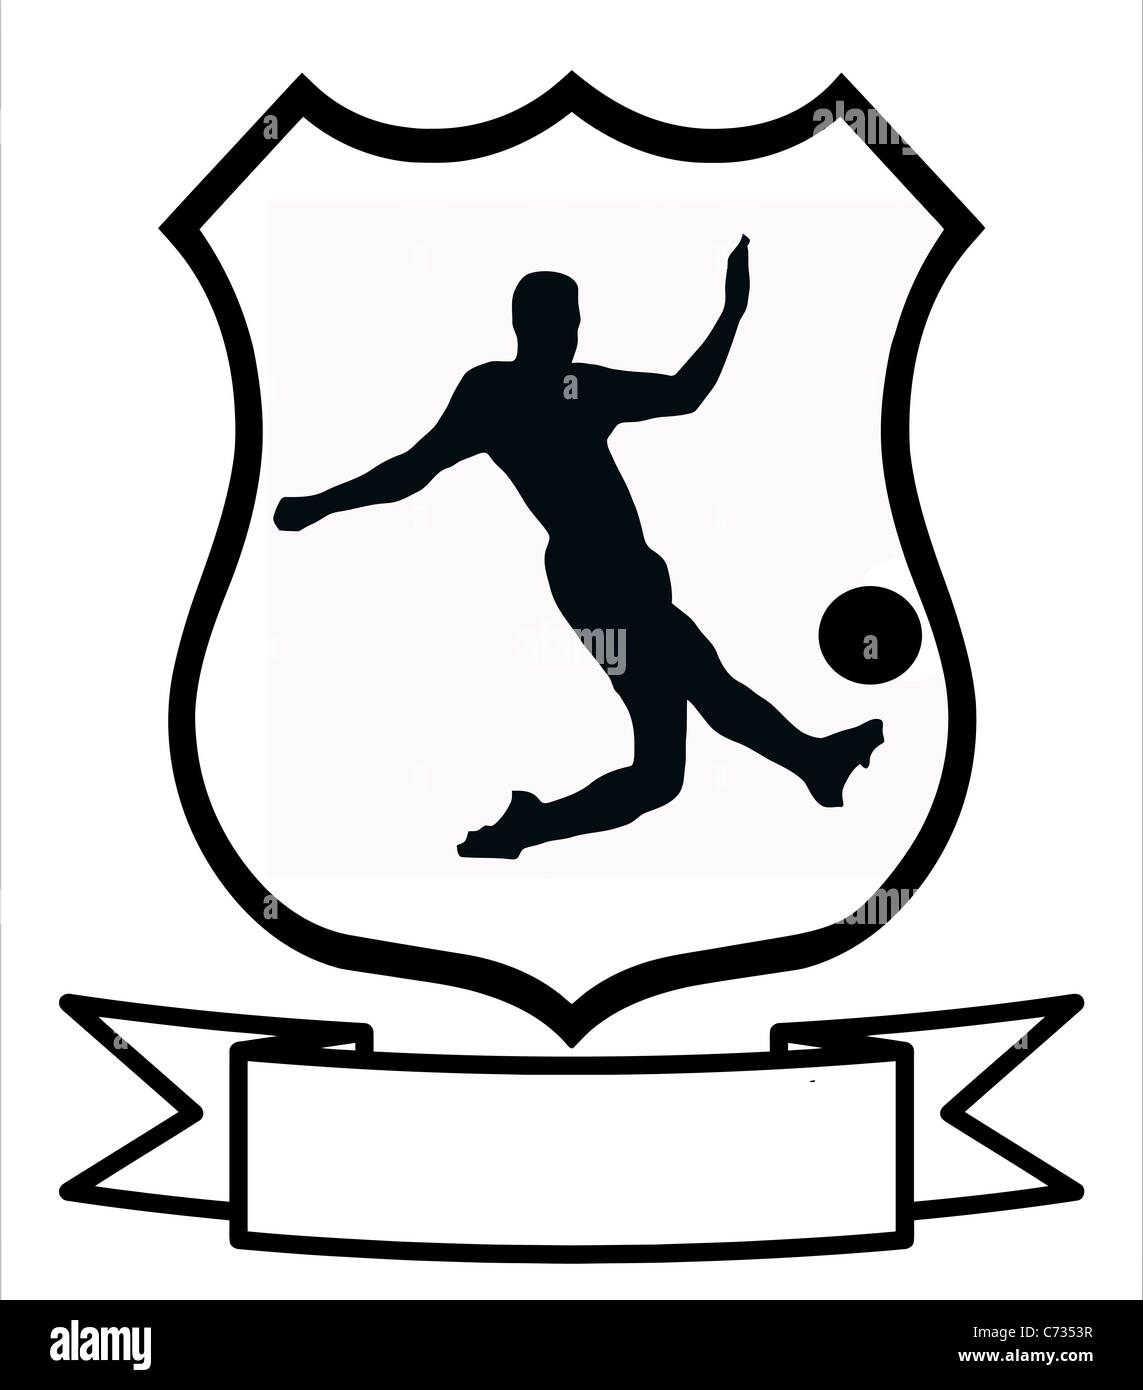 Sport calcio emblema distintivo logo scudo Insignia Stemma Foto stock -  Alamy